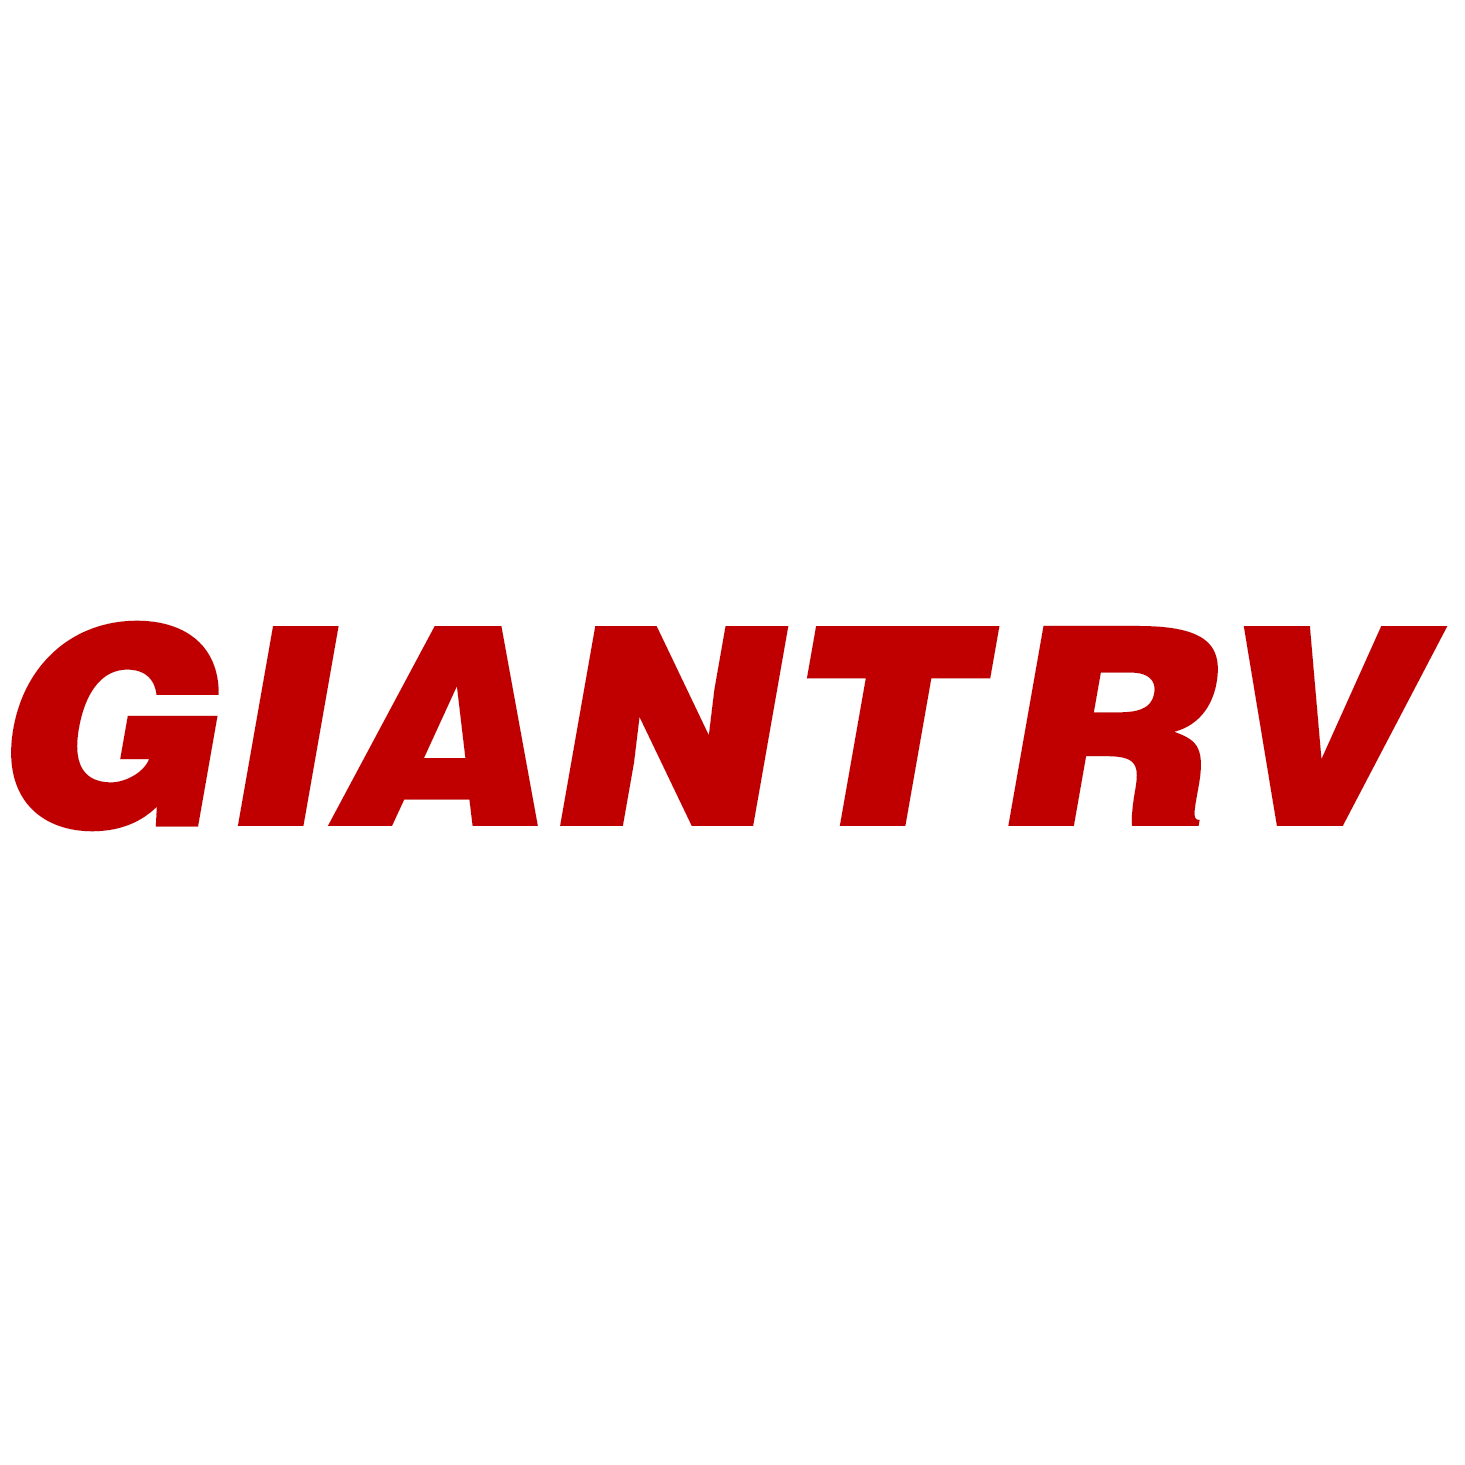 Giant RV Logo